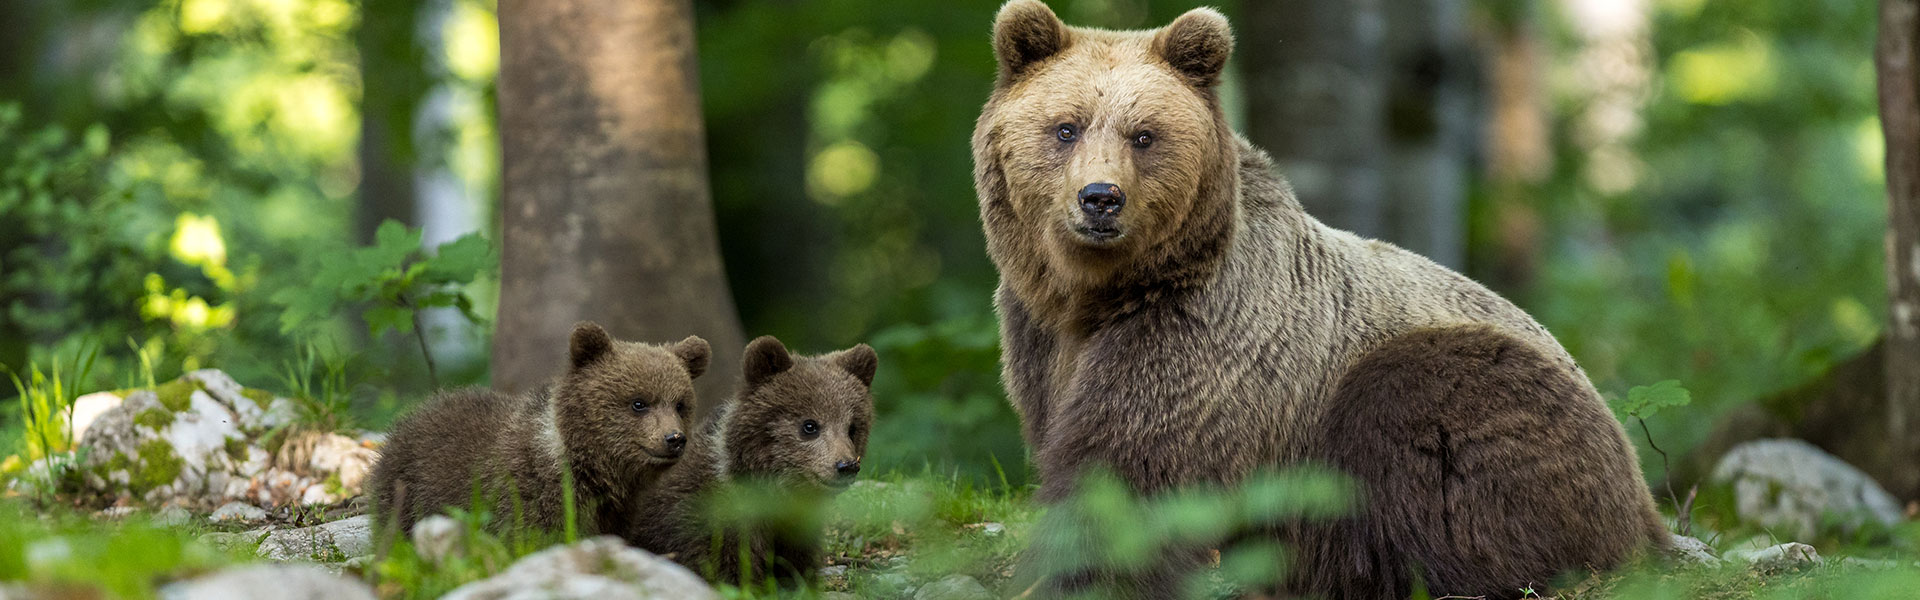 Slowenien – wilde Braunbären im Fotohide, Landschaften, Tropfsteinhöhle